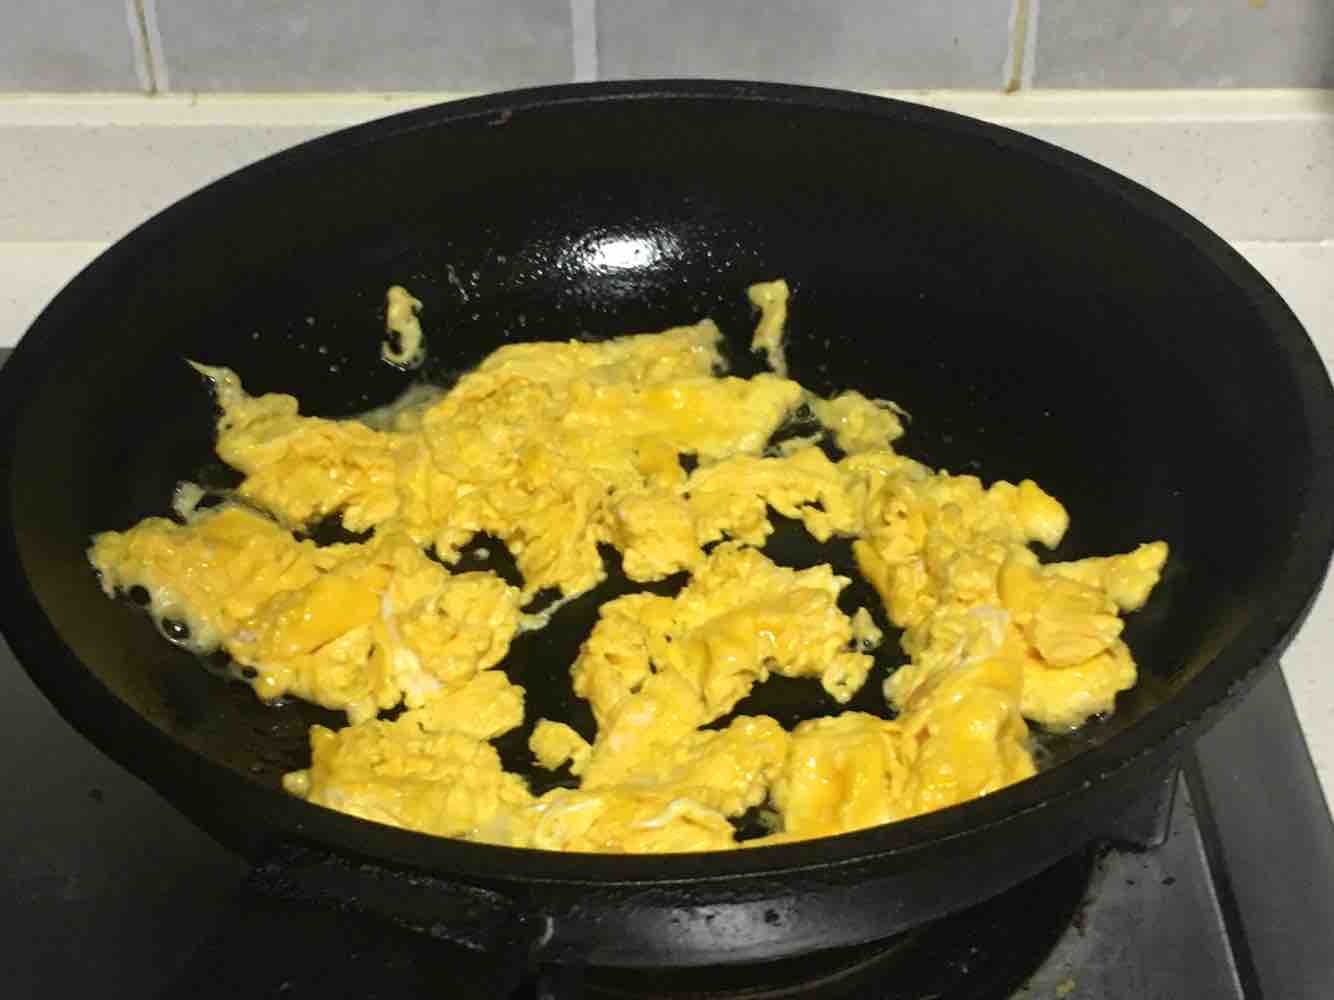 Scrambled Eggs with Zucchini recipe